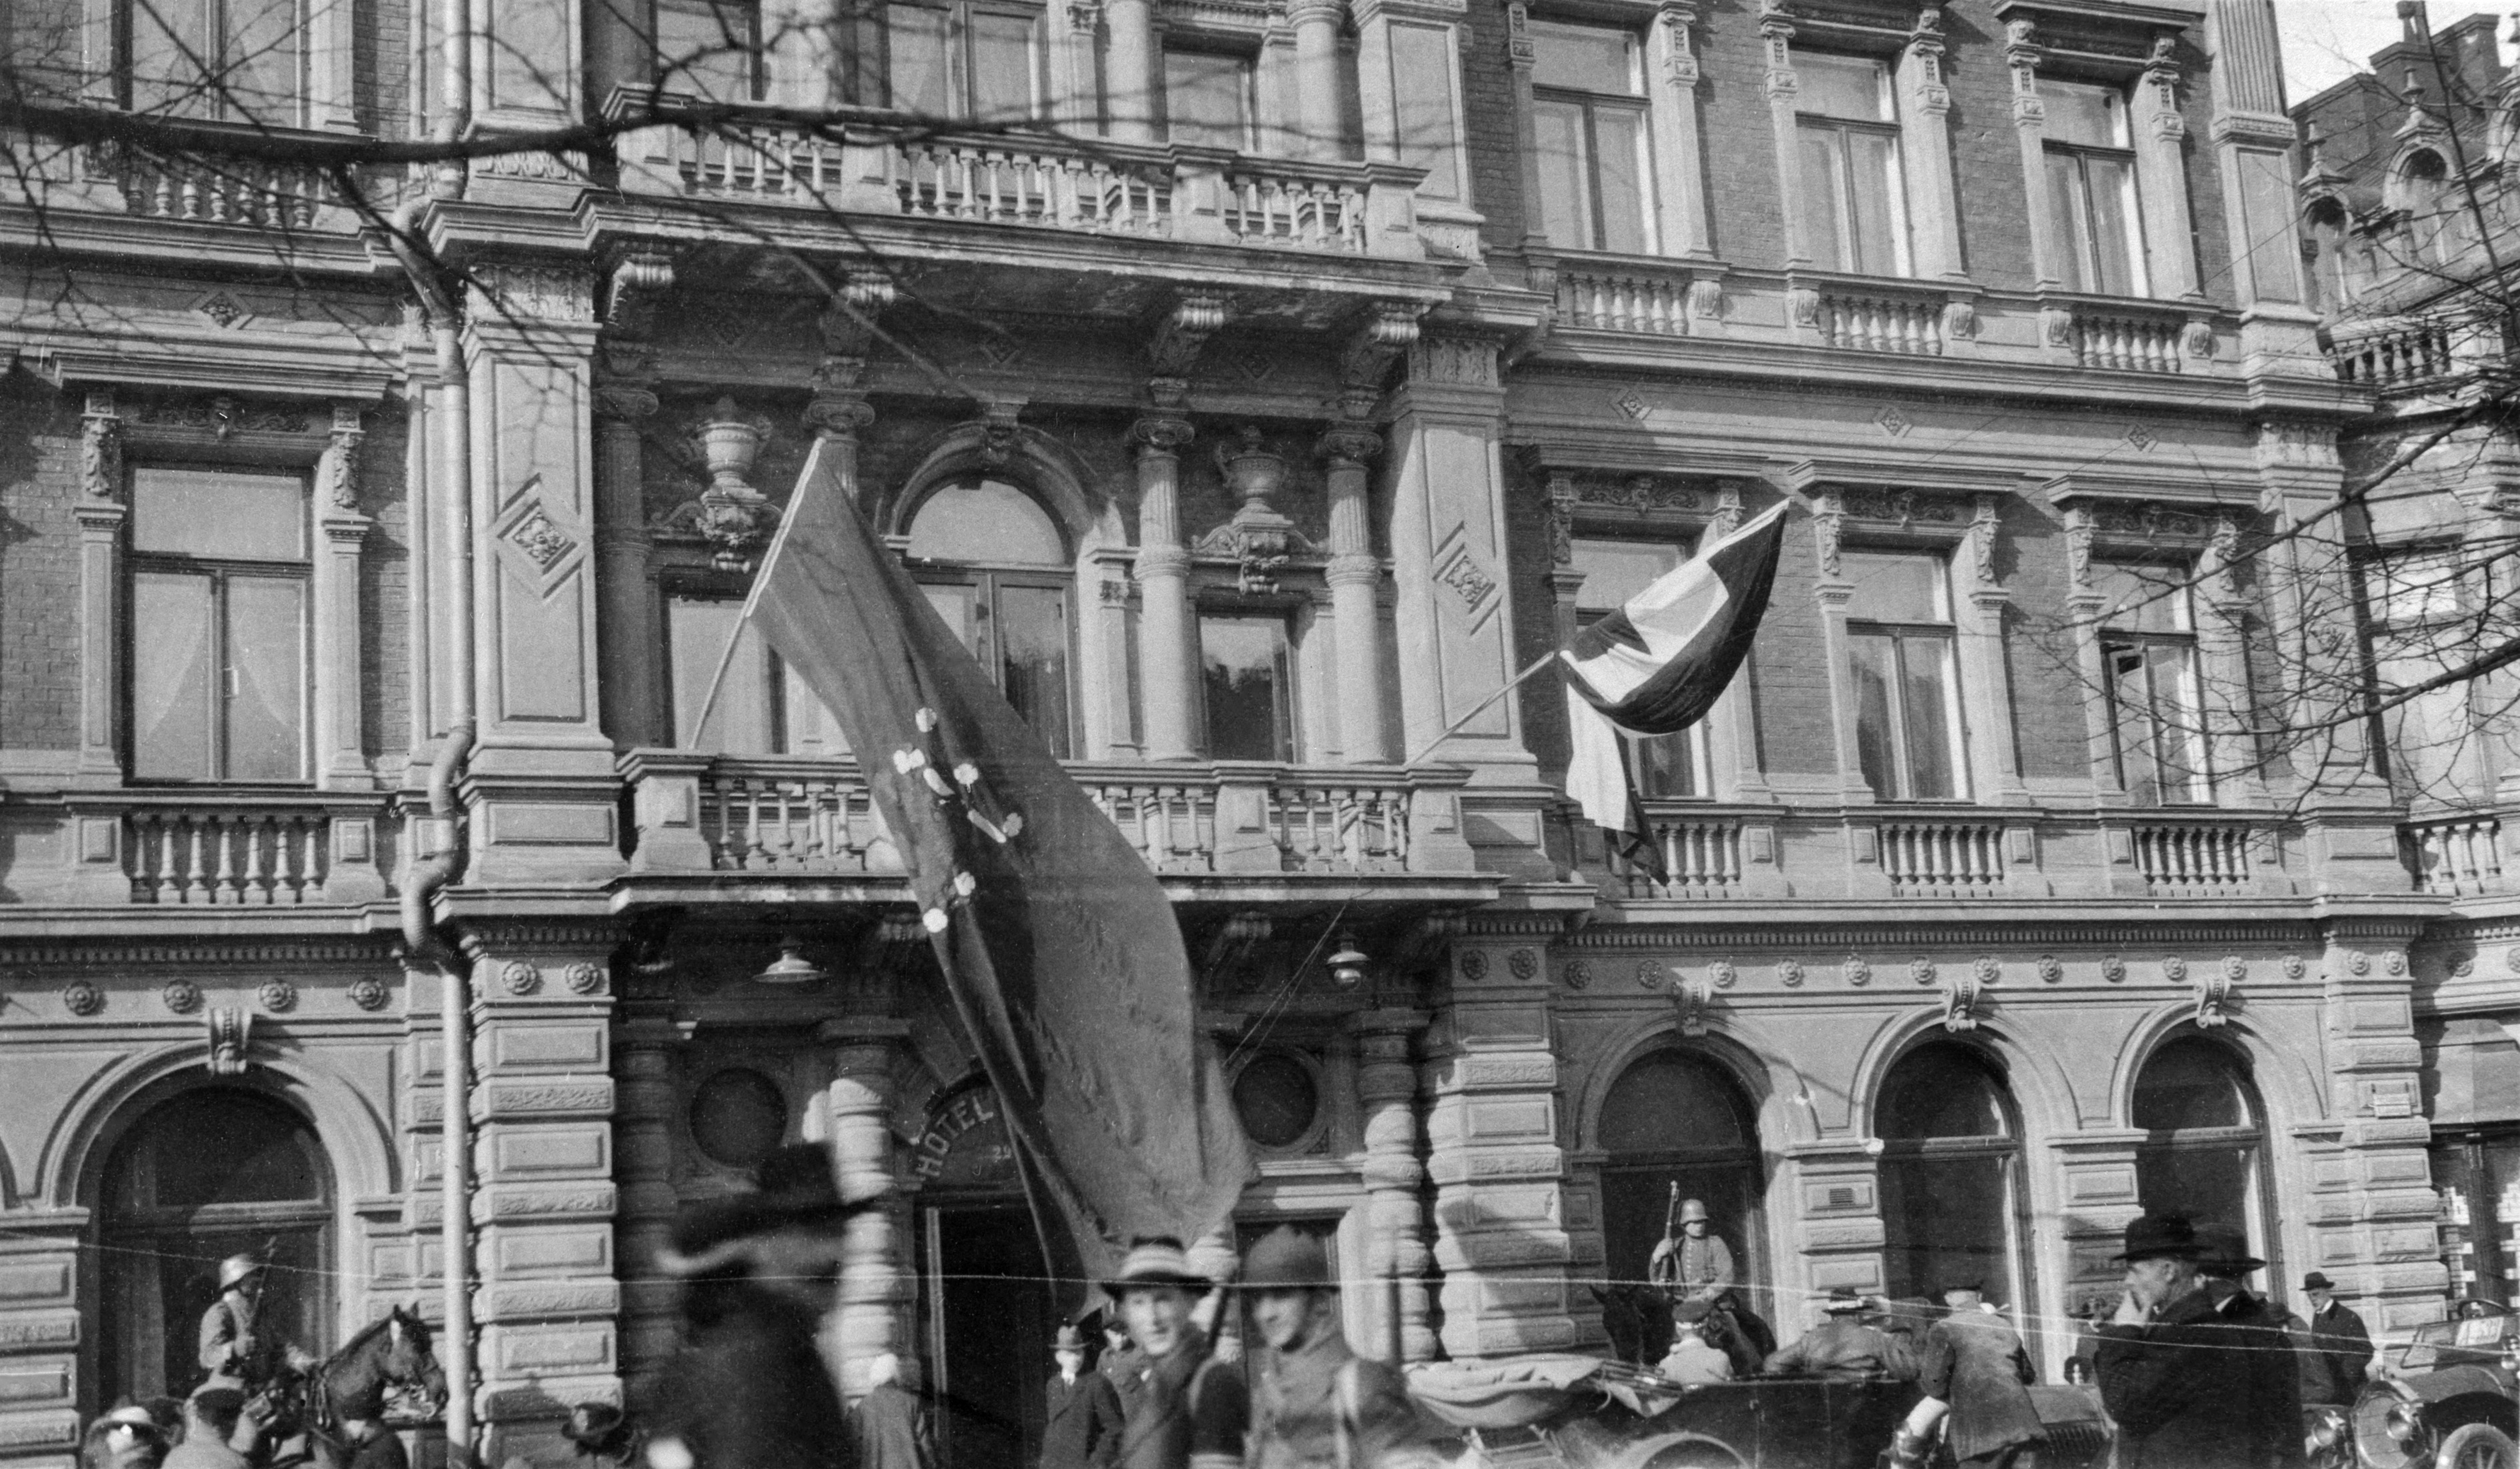 Helsingin valtaus 1918, saksalaisten esikunta hotelli Kämpissä, Pohjoisesplanadi 29. Vasemmalla punapohjainen Suomen lippu, oikealla vihreä-valko-musta Saksan valtakunnanlippu.